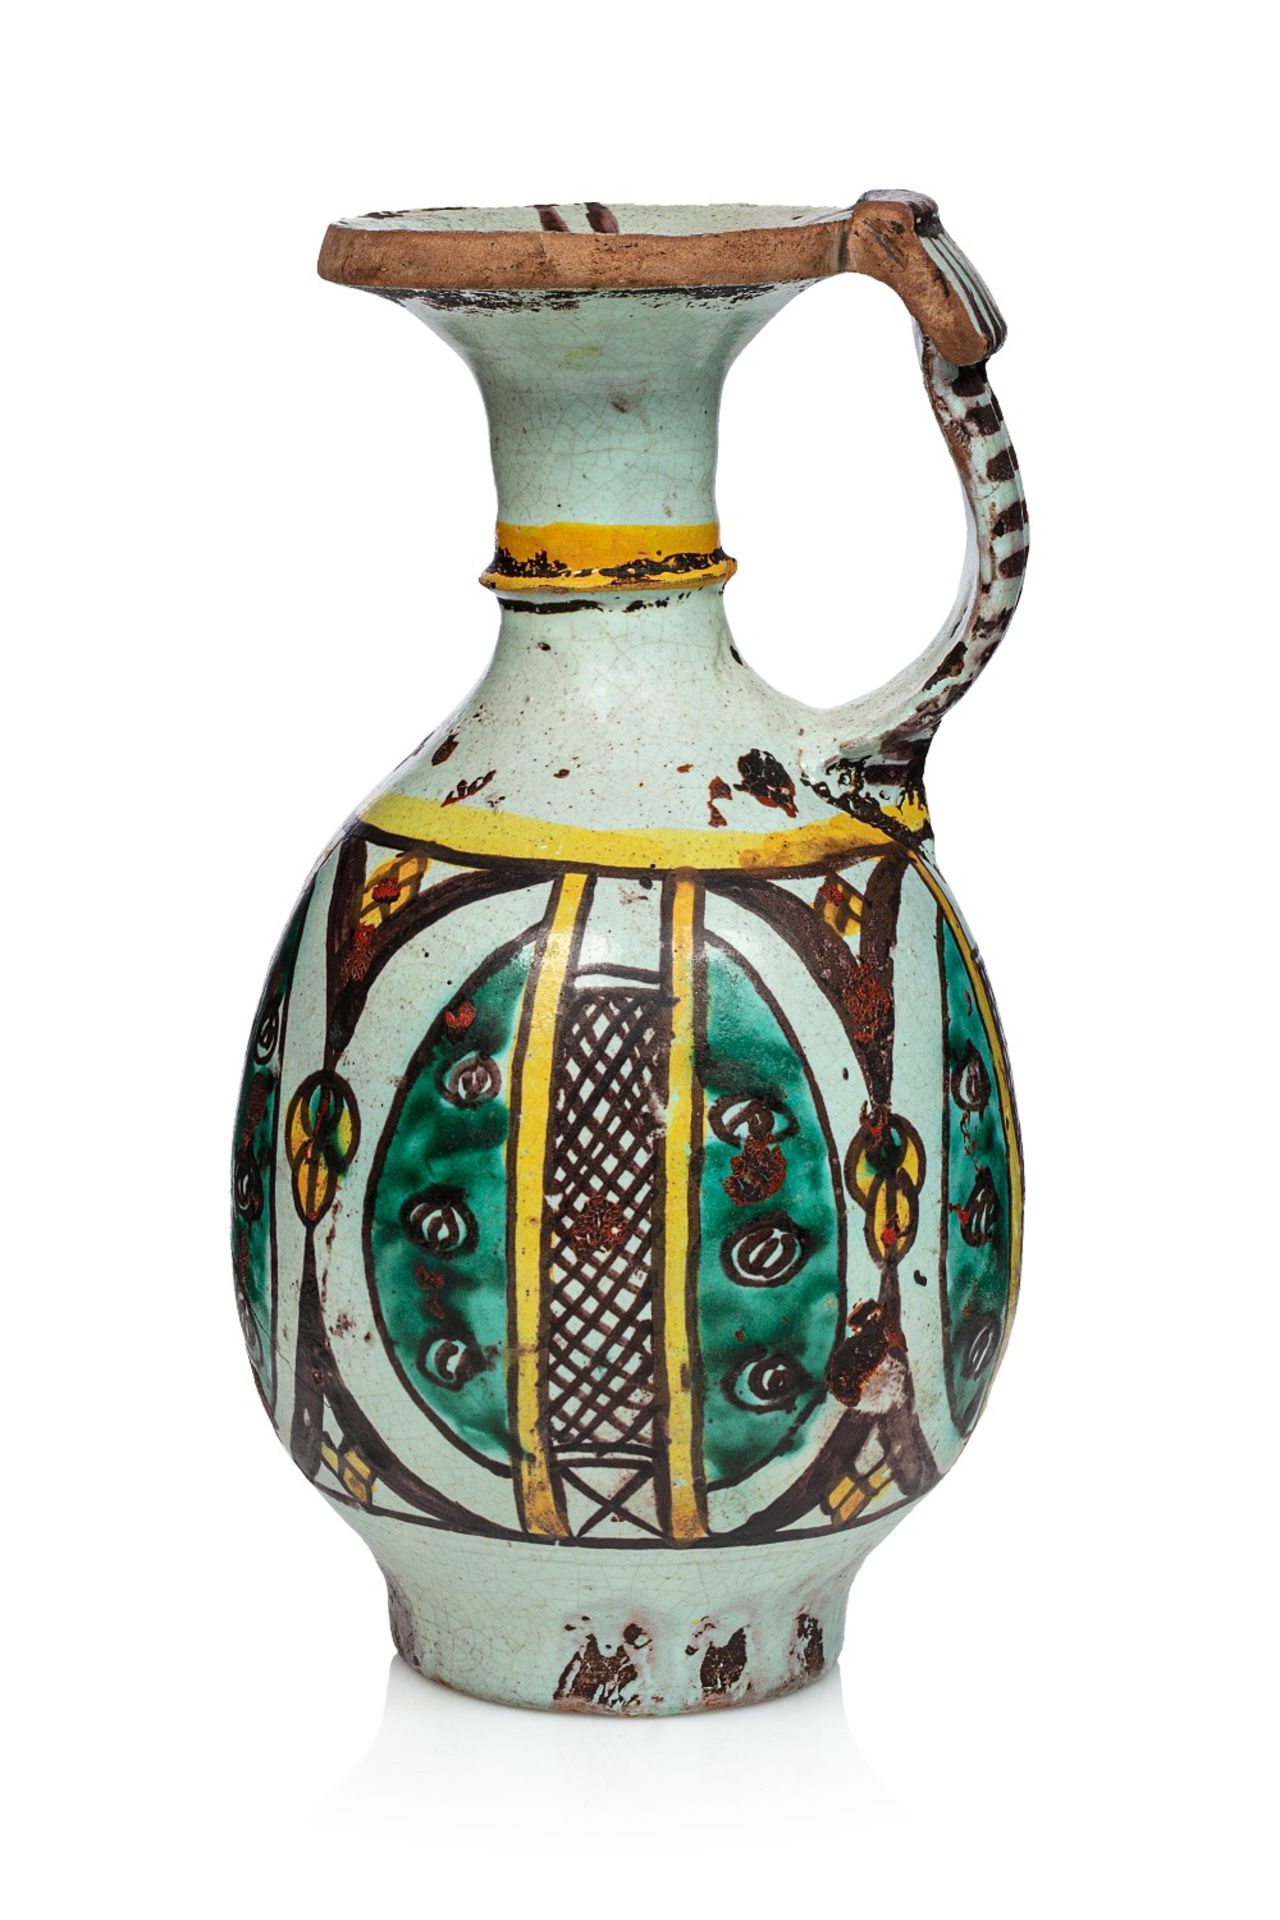 Ziata - Verseuse à huileMaroc, début du XIXe siècleEn céramique à décor émaillé en jaune, vert et